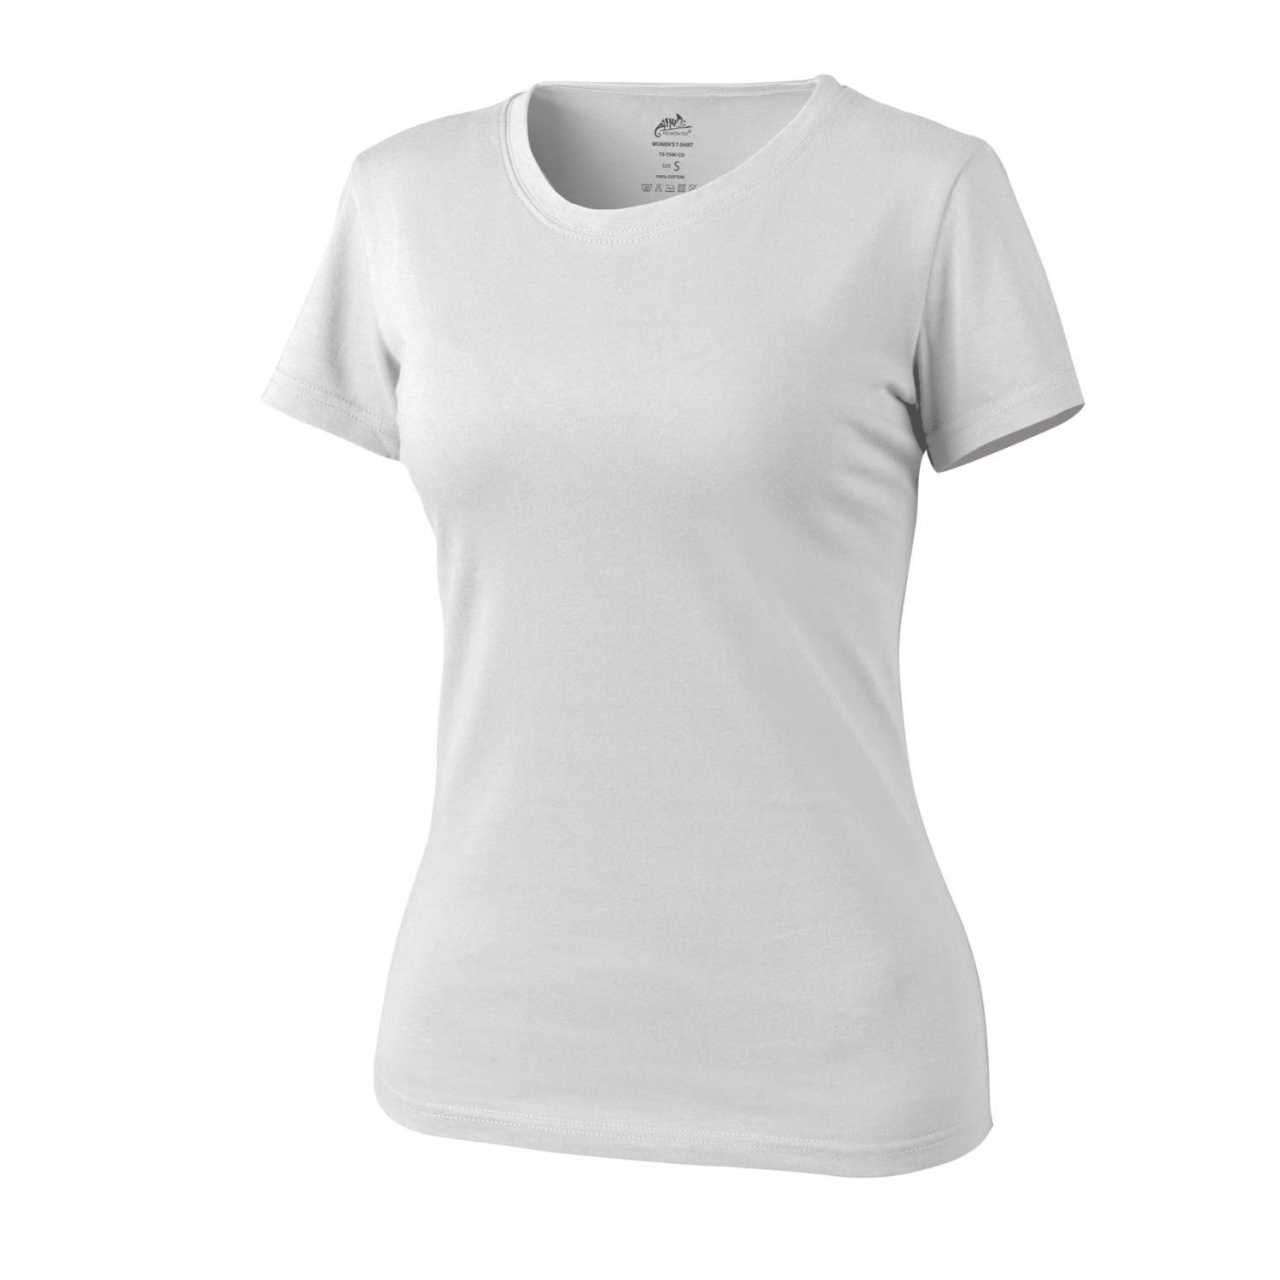 Tričko dámské Helikon Womens Shirt - bílé, L